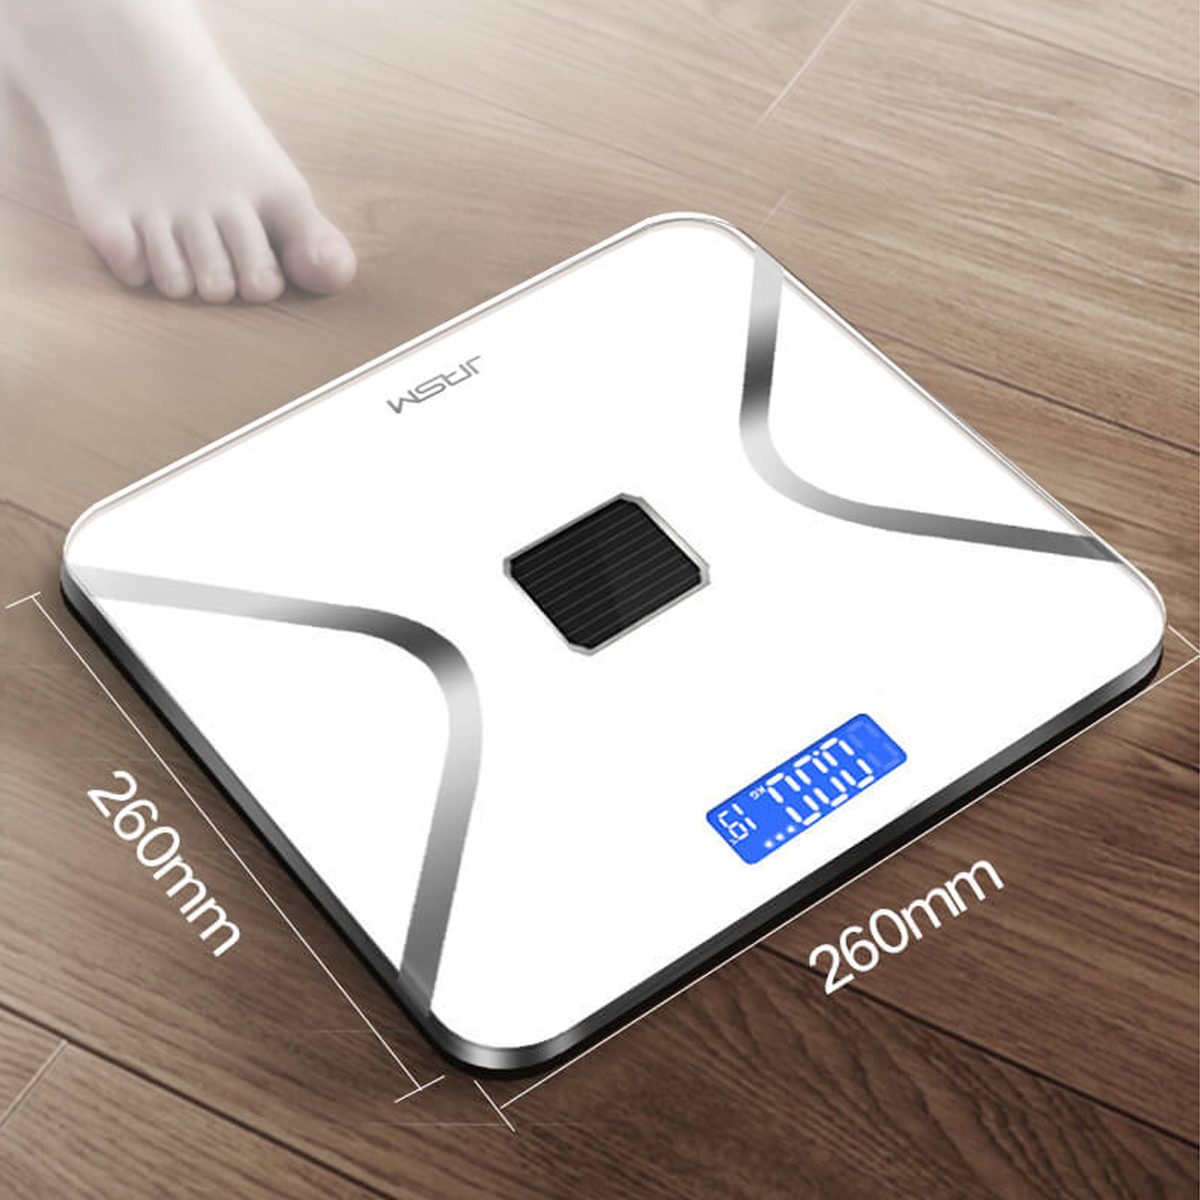 Digital-Wireless-Body-Fat-Scale-Analyzer-Healthy-Weight-Balance-Scale-BMI-Tester-1541962-8